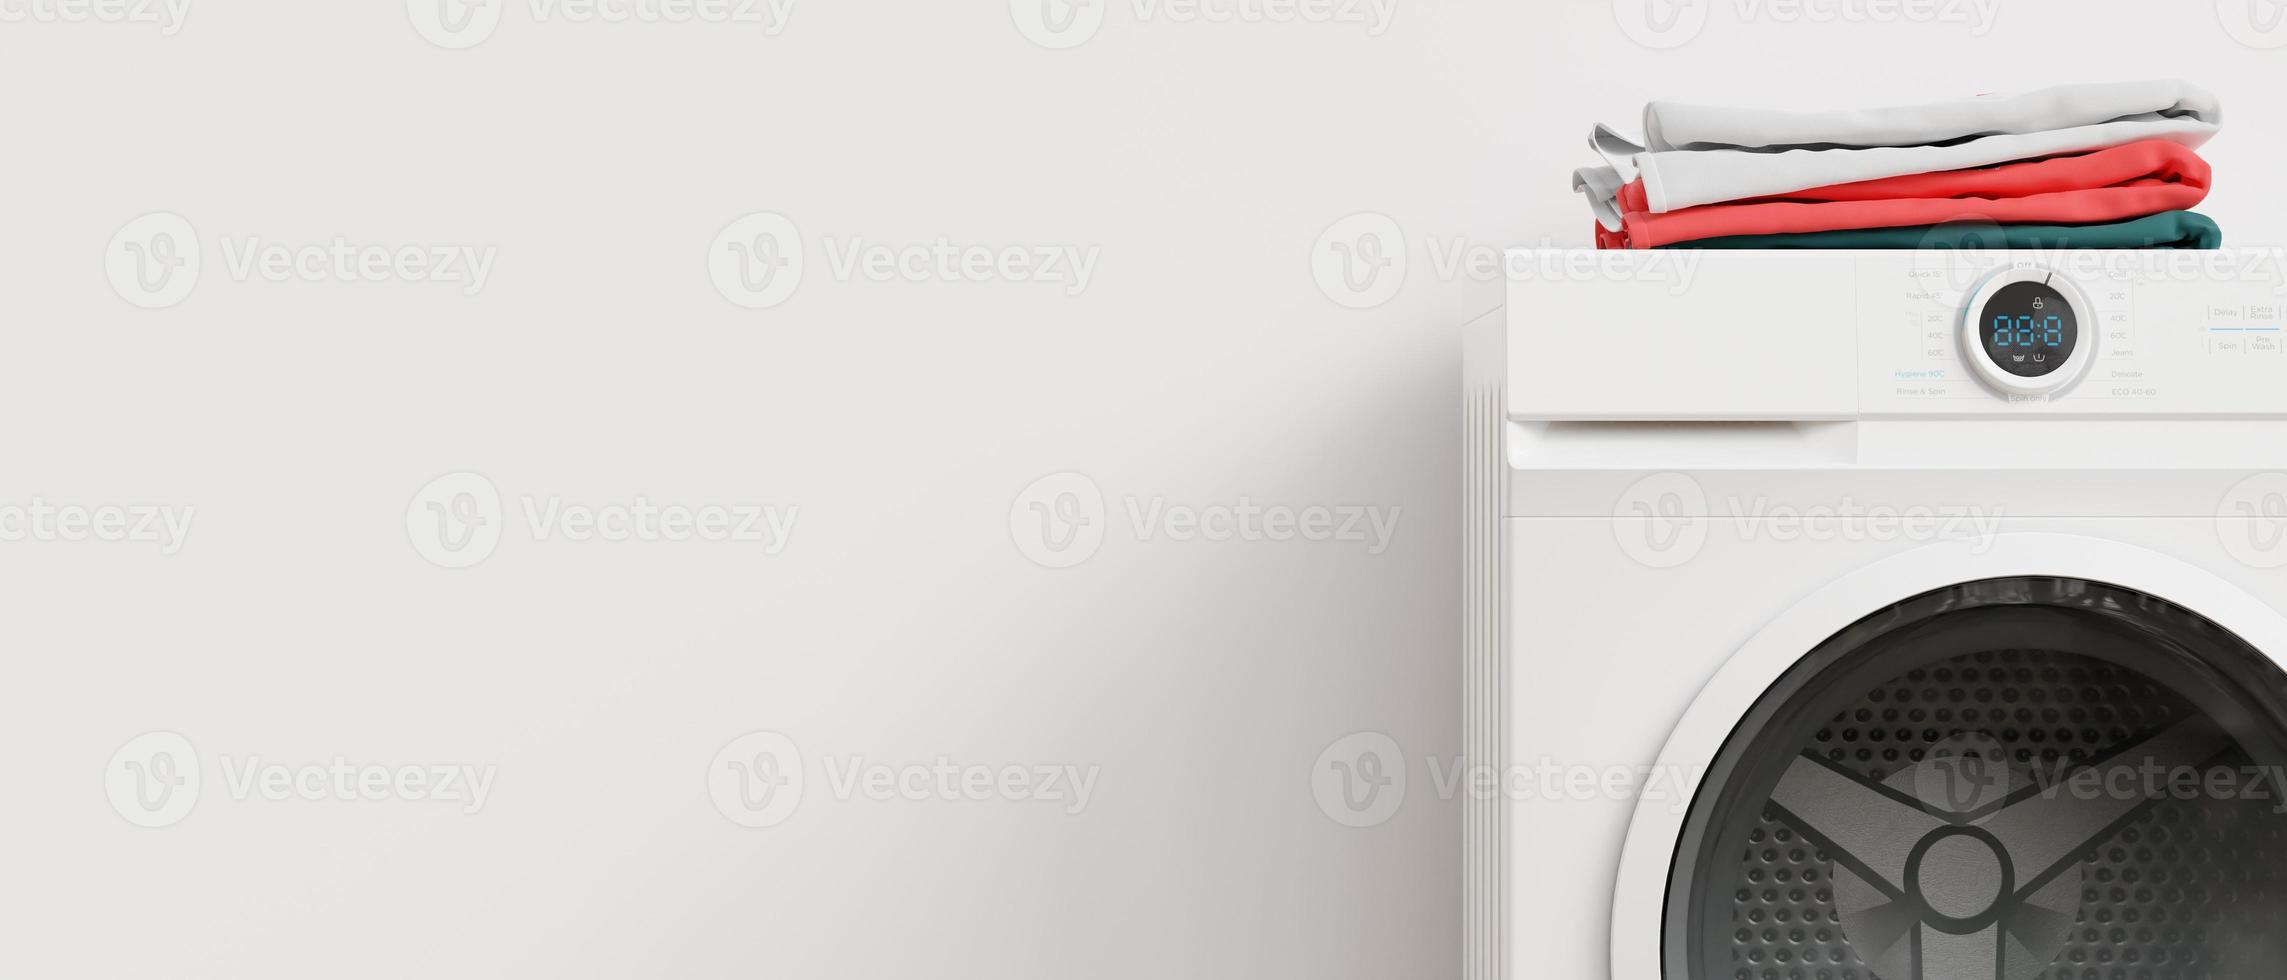 machine à laver debout dans une pièce vide. copiez l'espace pour le texte, la publicité. équipement électrique domestique. appareil ménager moderne utilisé pour laver le linge. laveuse à chargement frontal. rendu 3d. photo